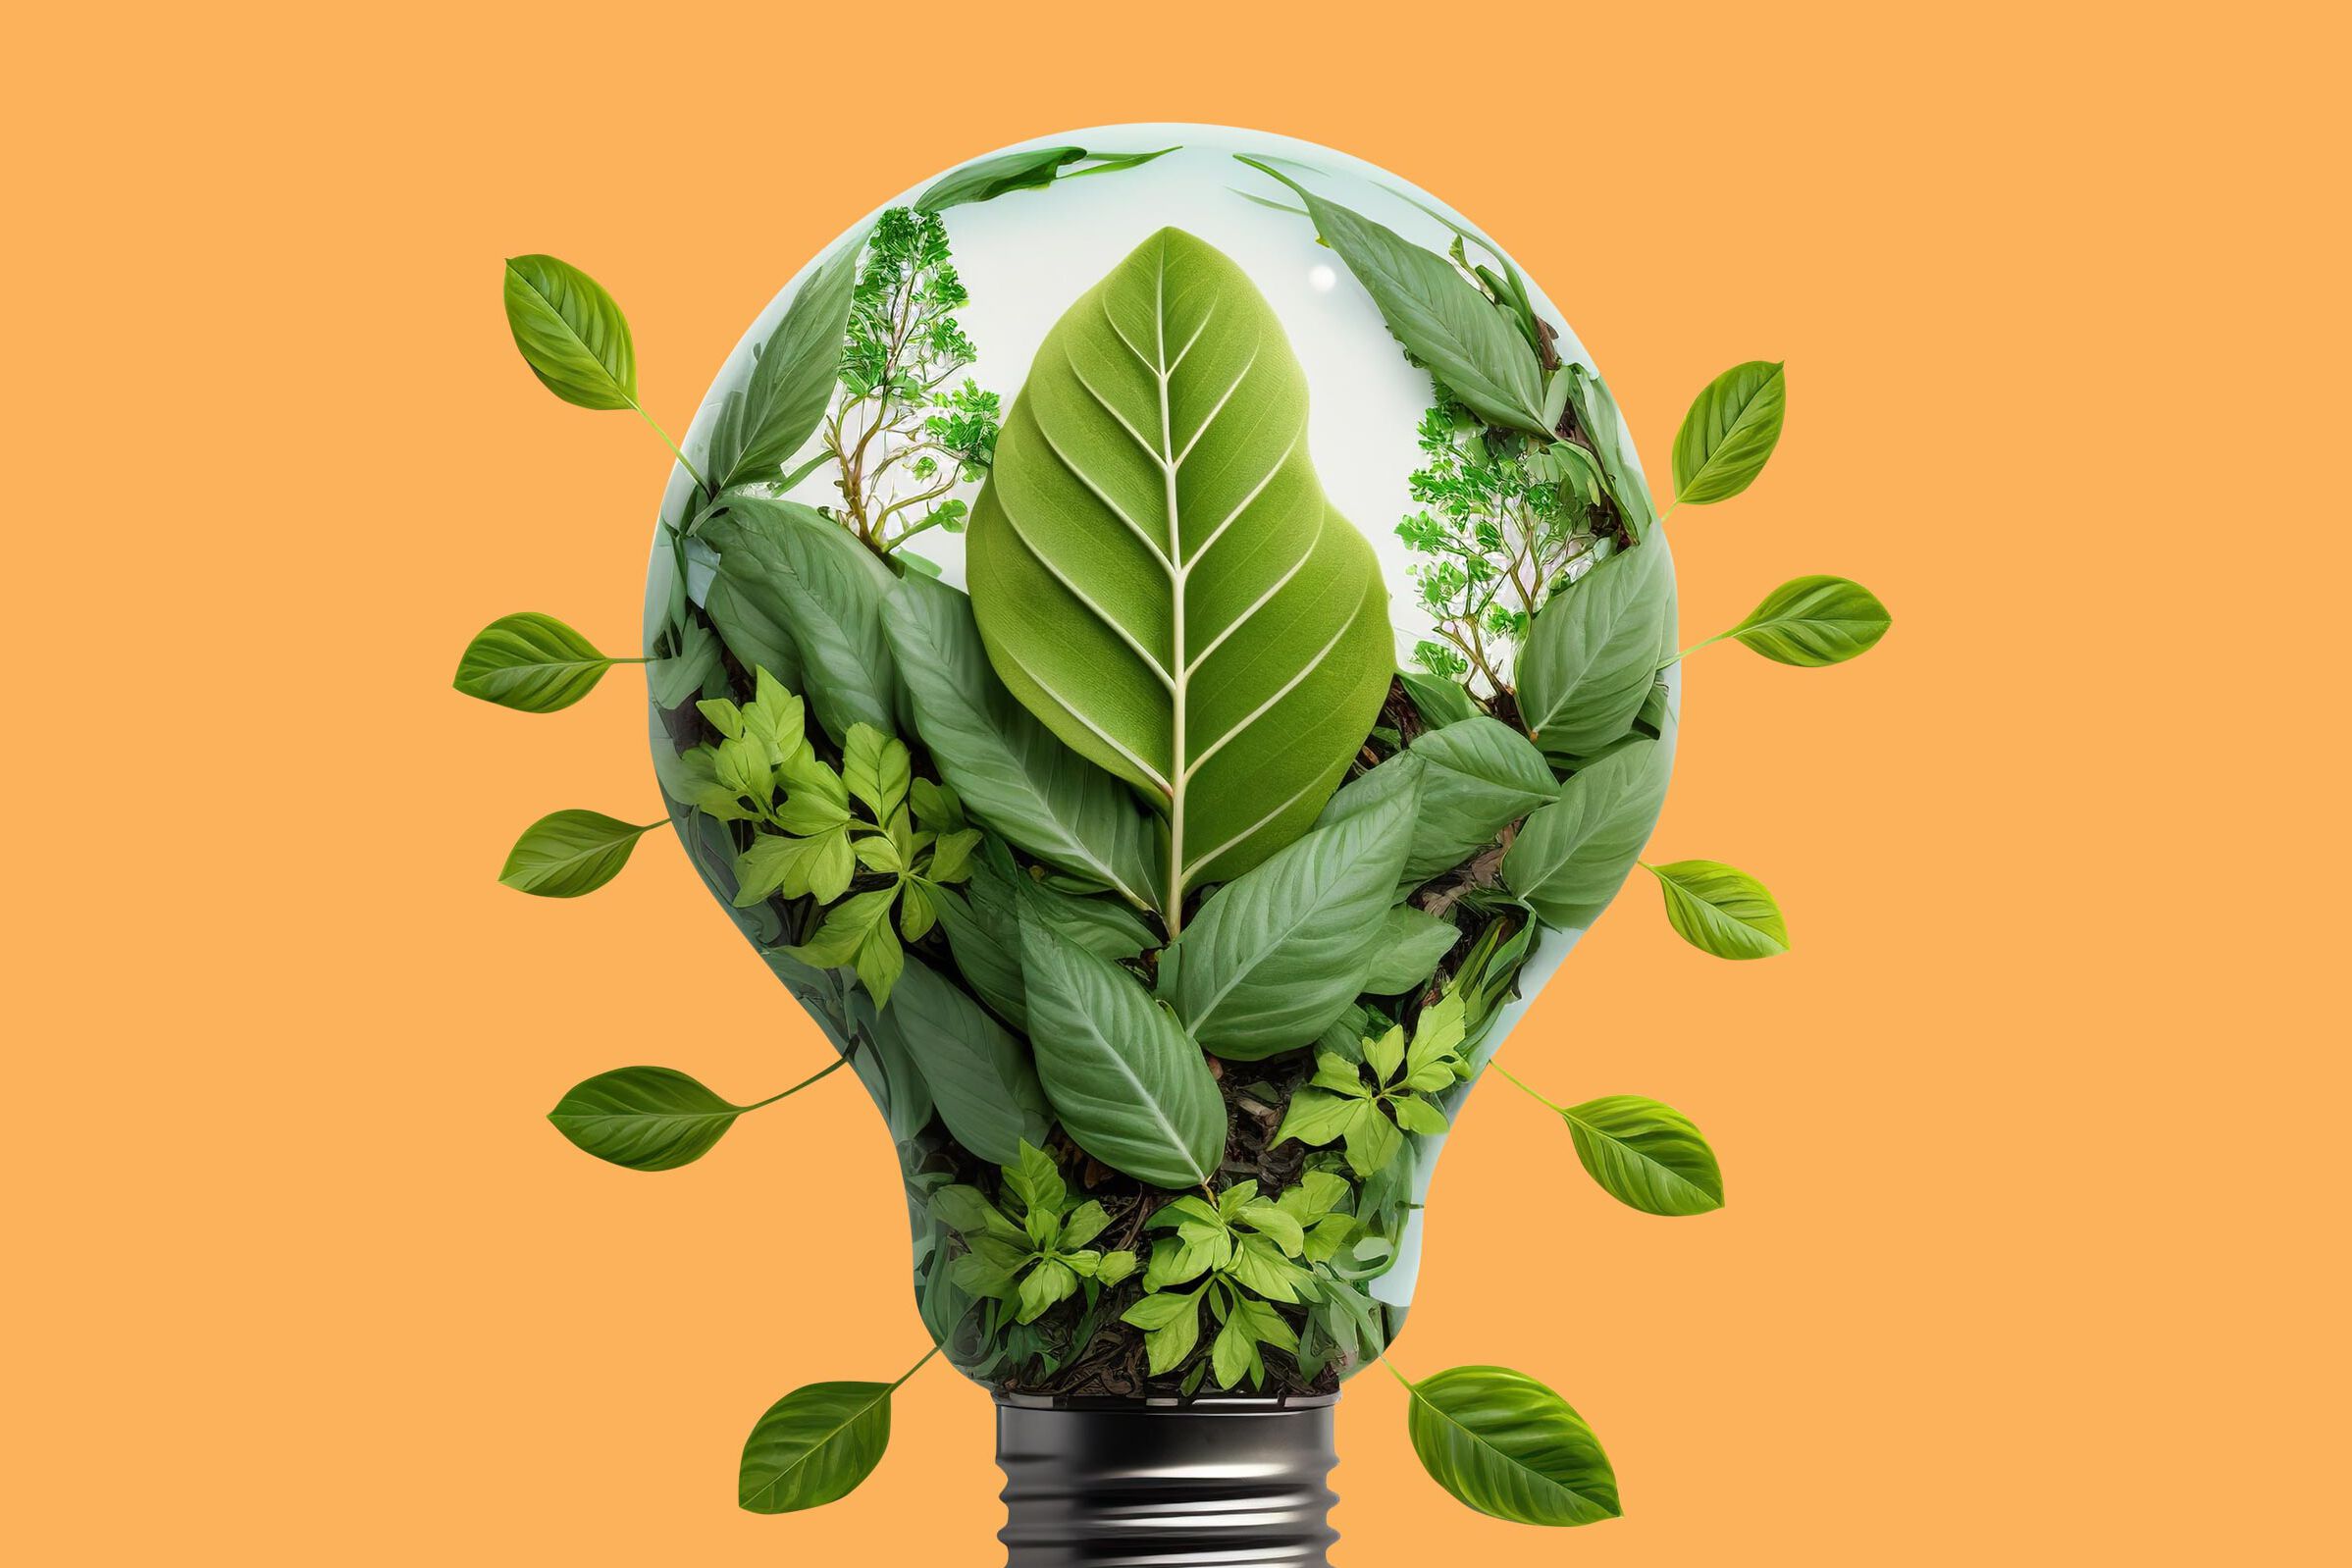 Nachhaltigkeit und Energieeffizienz - Glühbirne mit grünen Blättern vor orangem Hintergrund